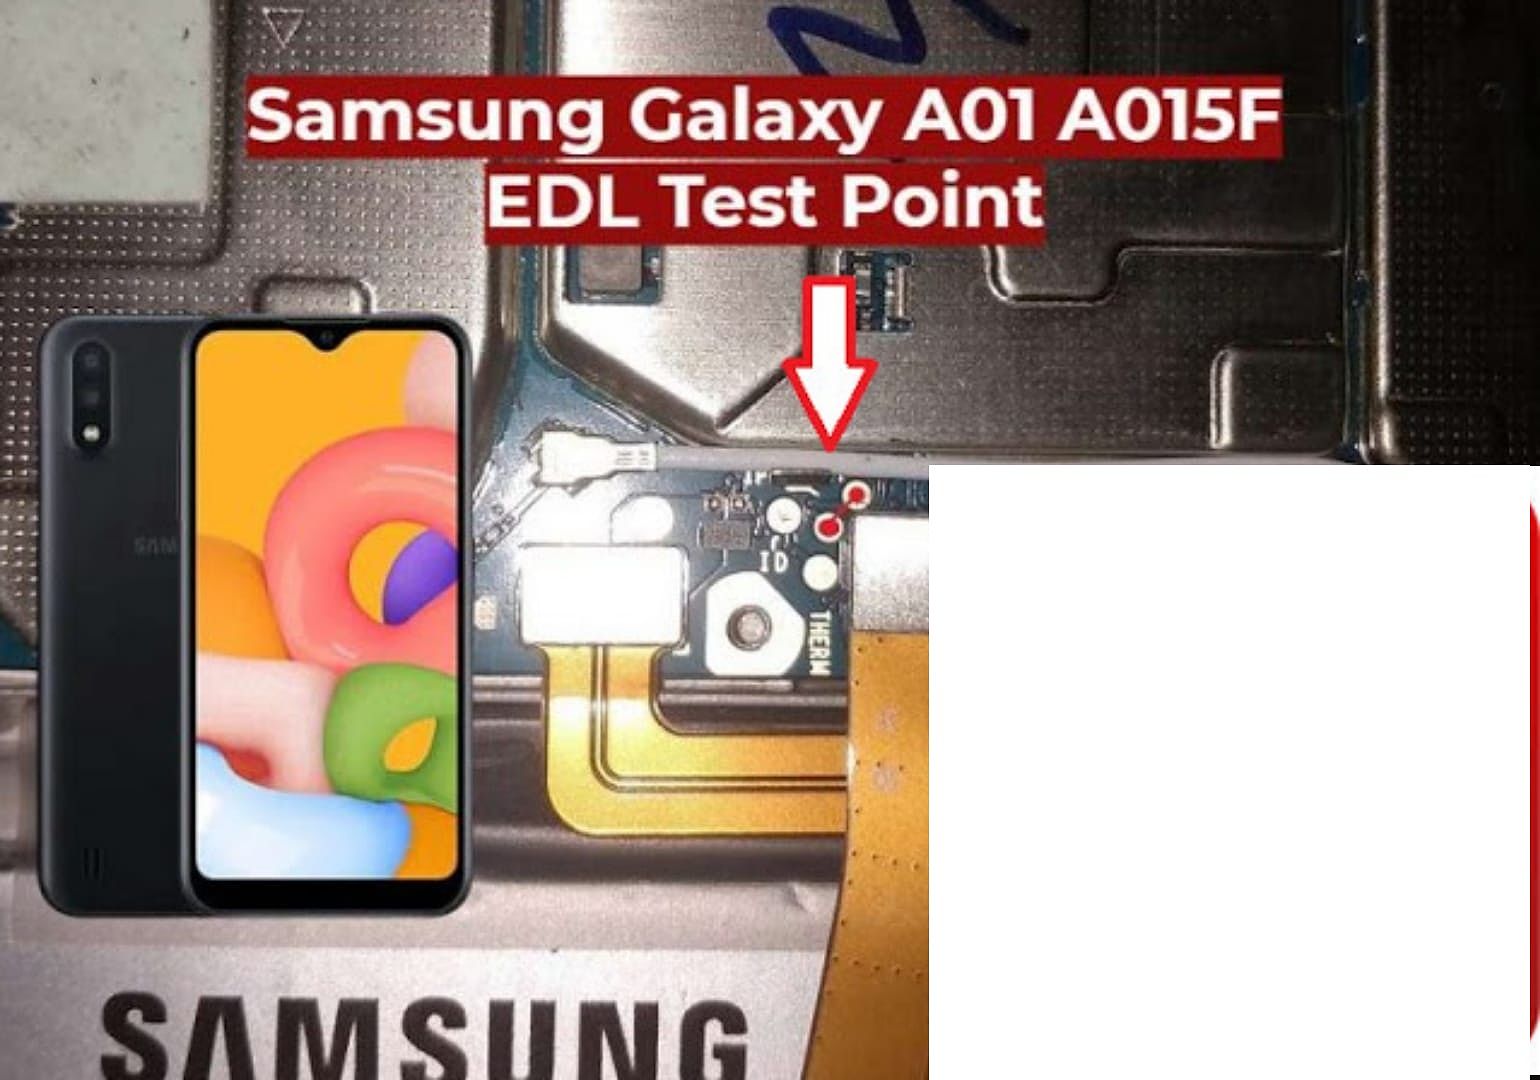 Samsung_Galaxy_A01_A015F_Test_